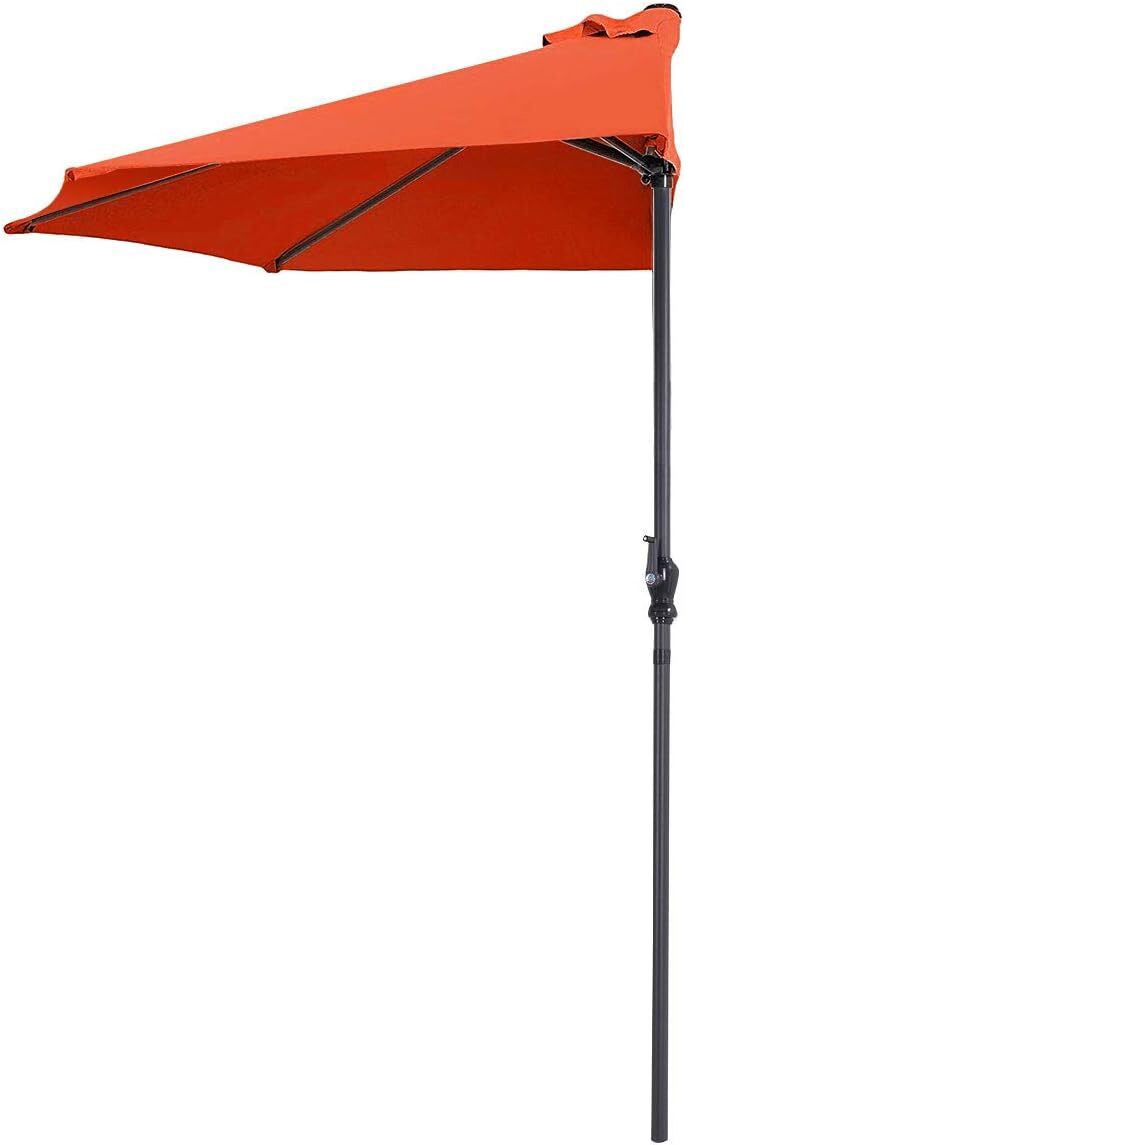 Tangkula 9 ft Half Round Outdoor Patio Umbrella in orange